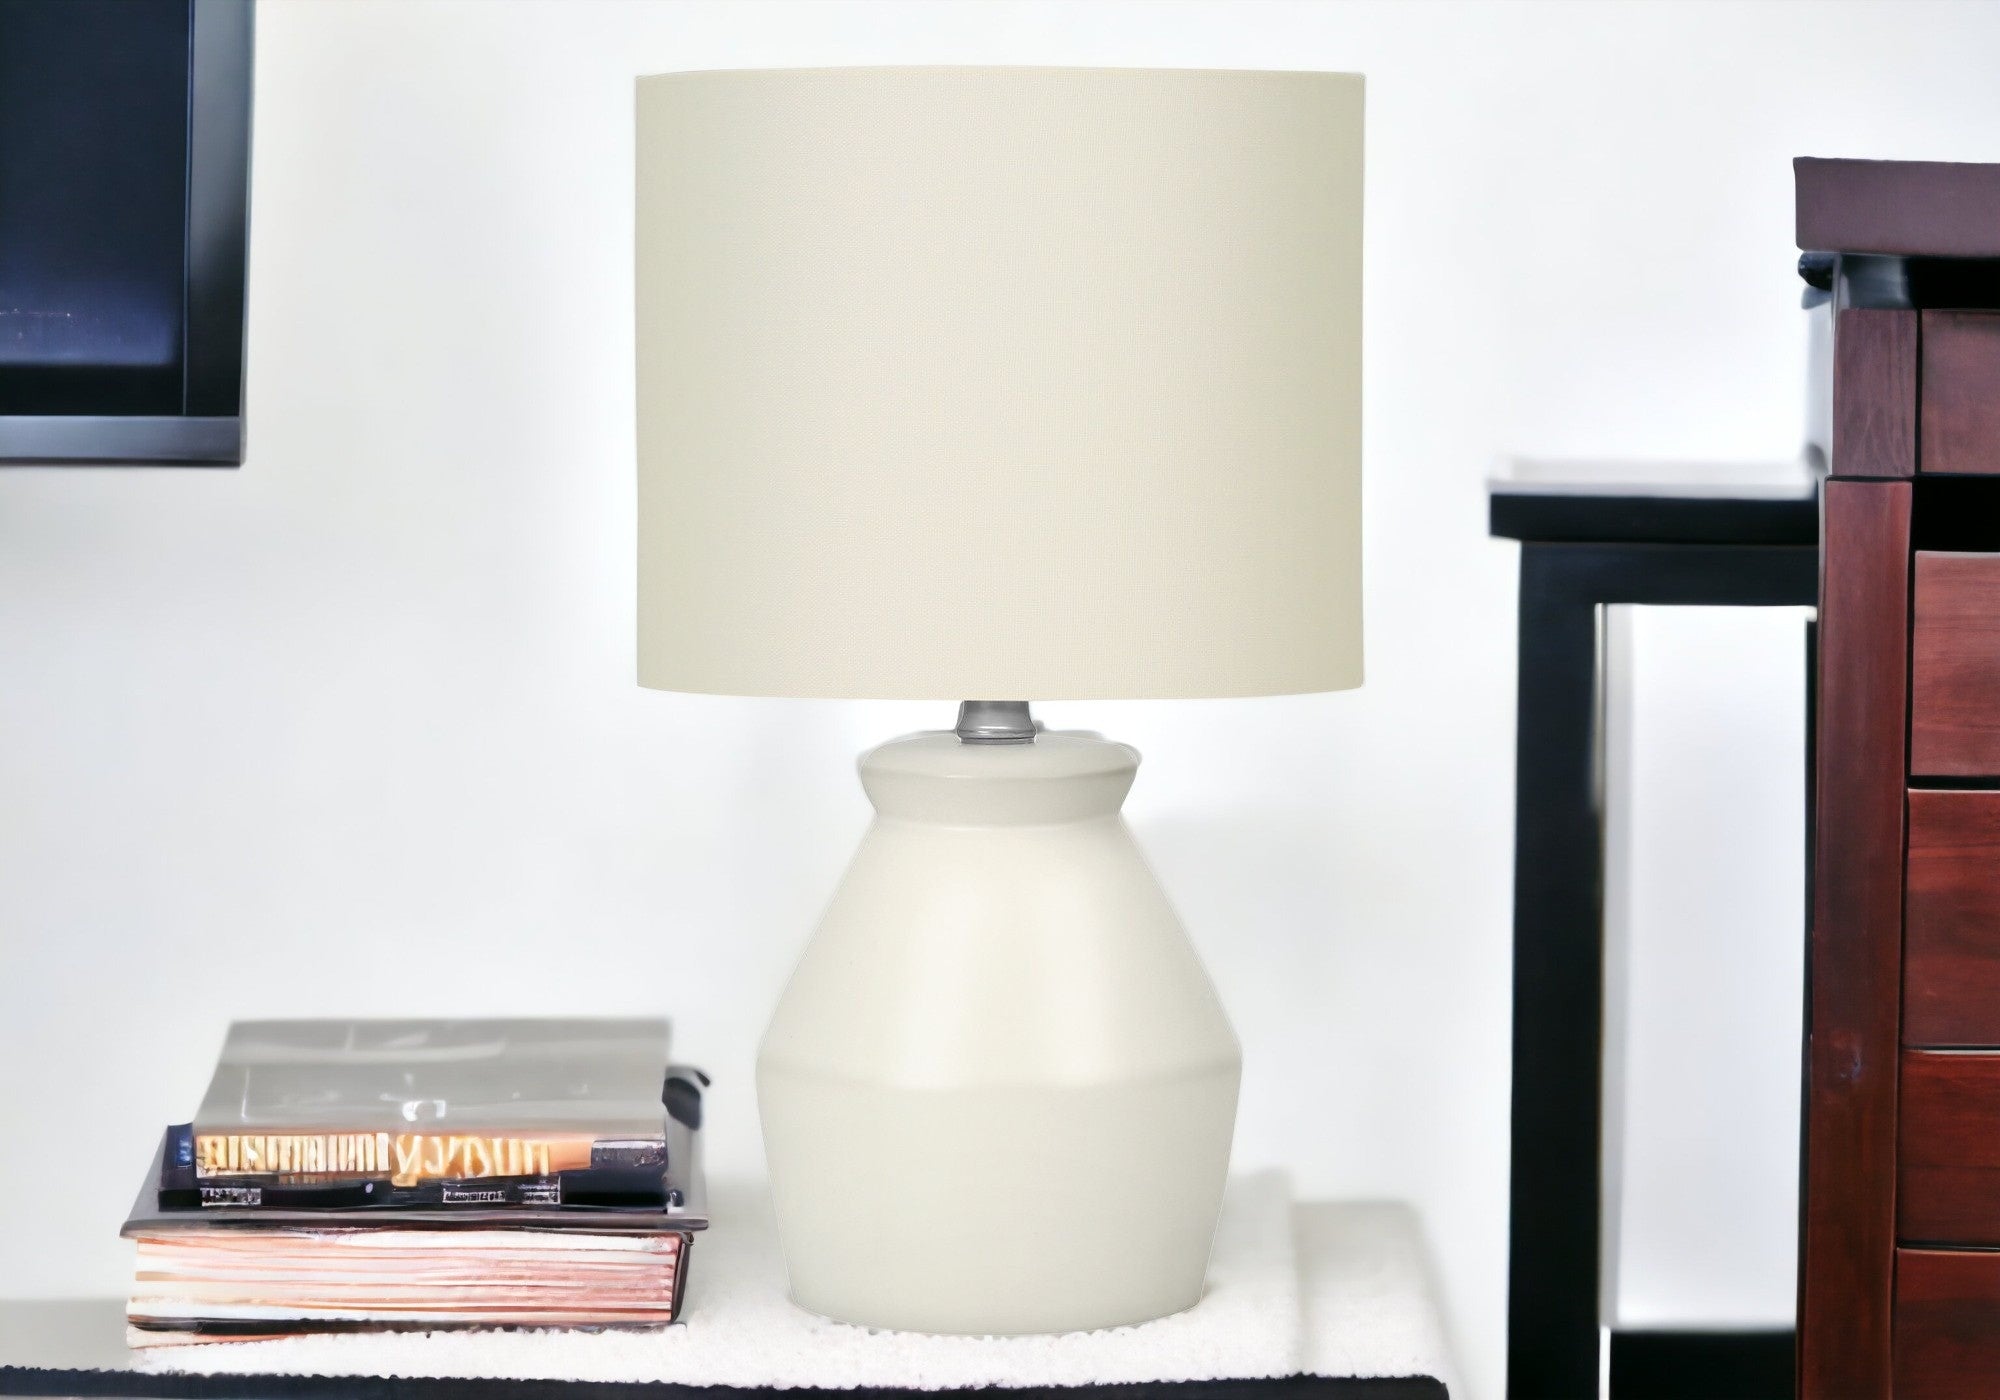 17" Cream Ceramic Geometric Table Lamp With Cream Drum Shade